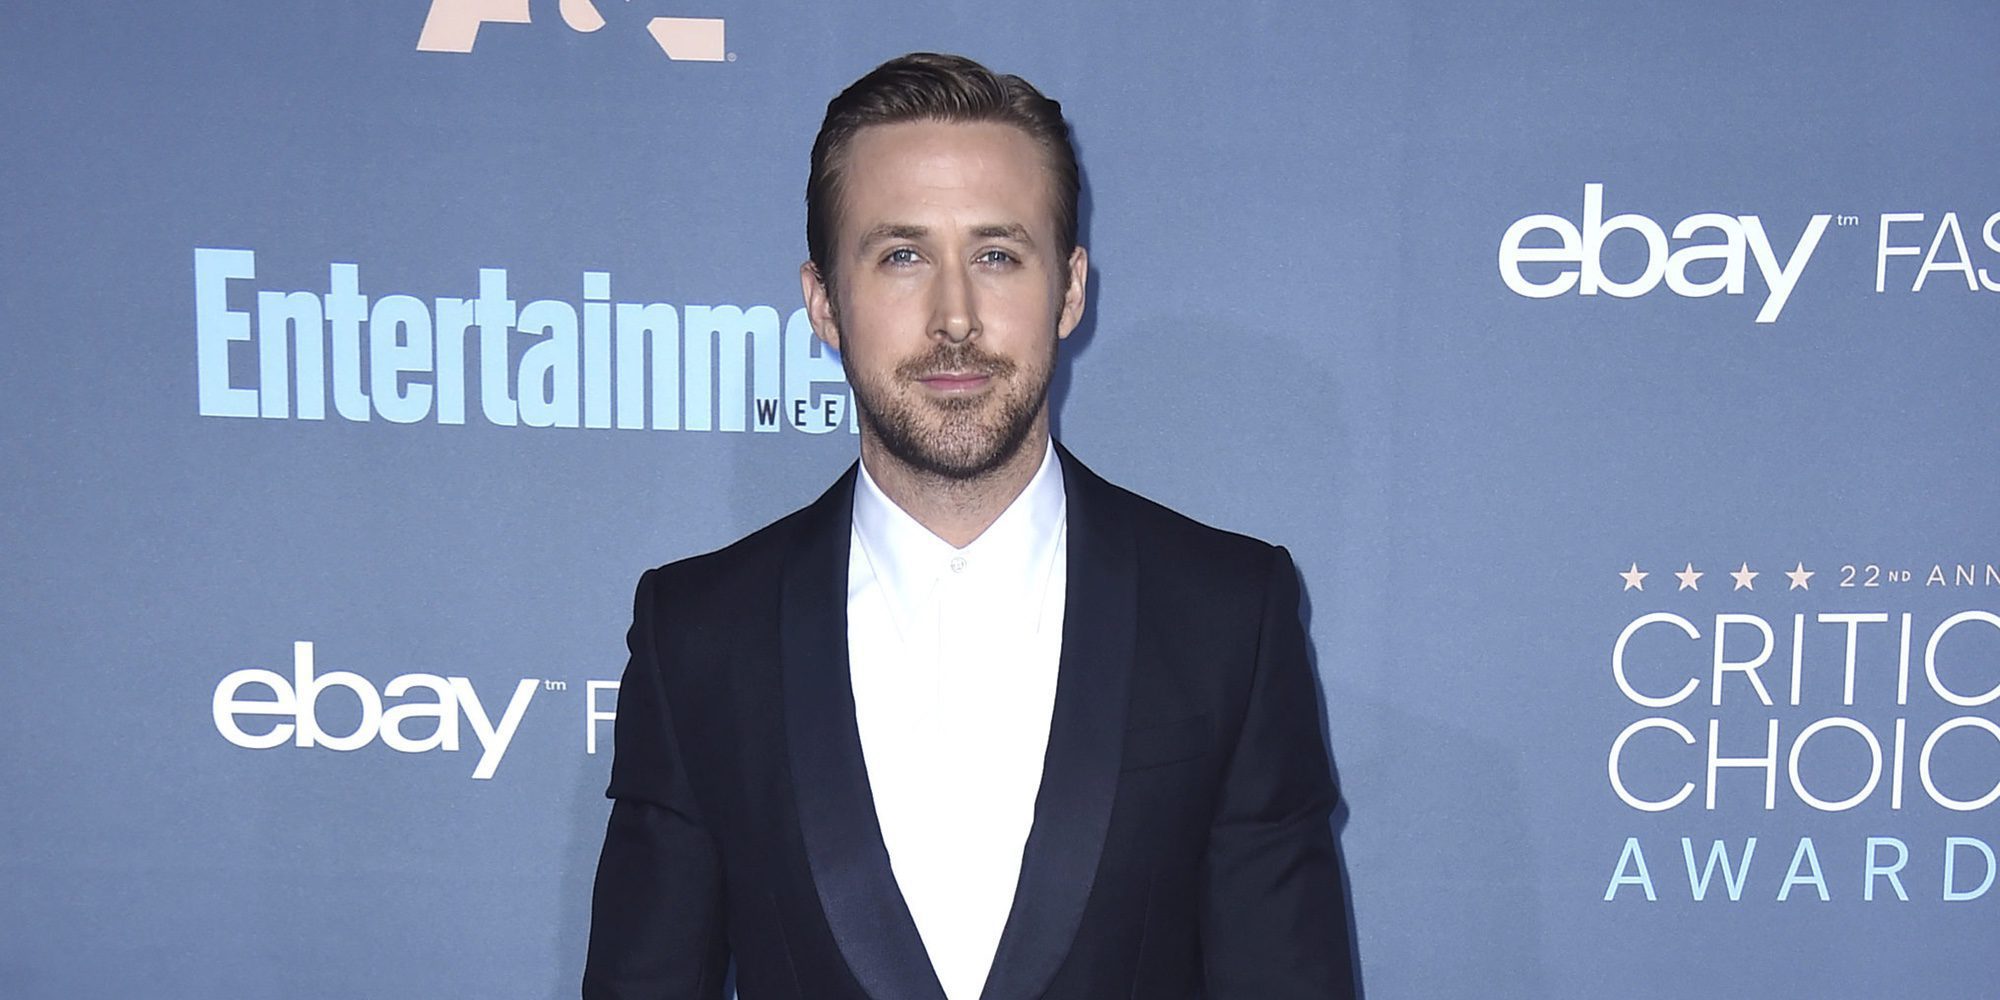 Las bonitas palabras de Ryan Gosling hacia Eva Mendes y sus dos hijas: "Me siento muy afortunado"